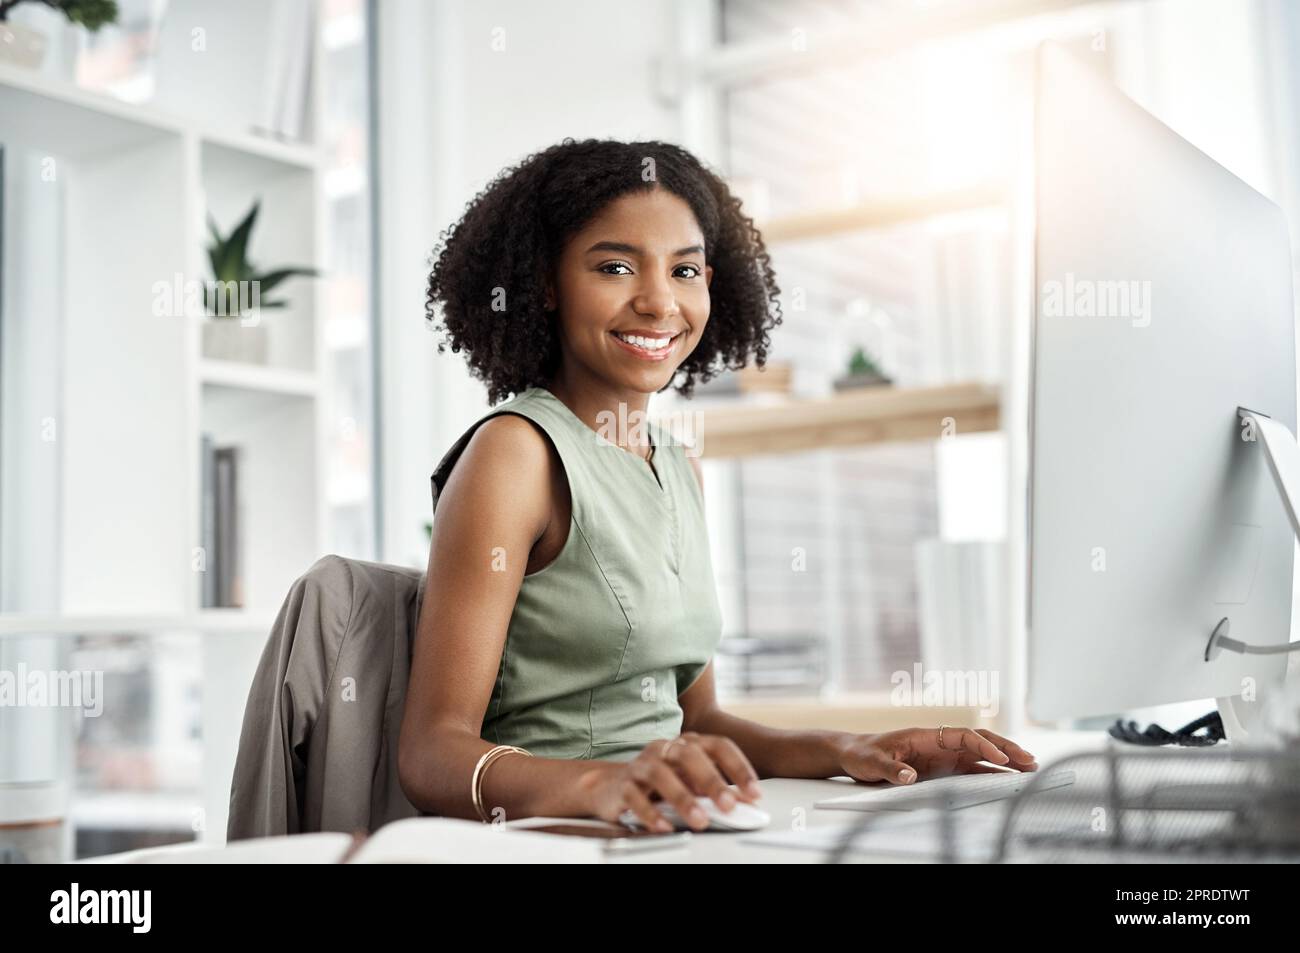 Meine Karriere ist auf dem richtigen Weg. Eine junge Geschäftsfrau, die an ihrem Schreibtisch in einem modernen Büro arbeitet. Stockfoto